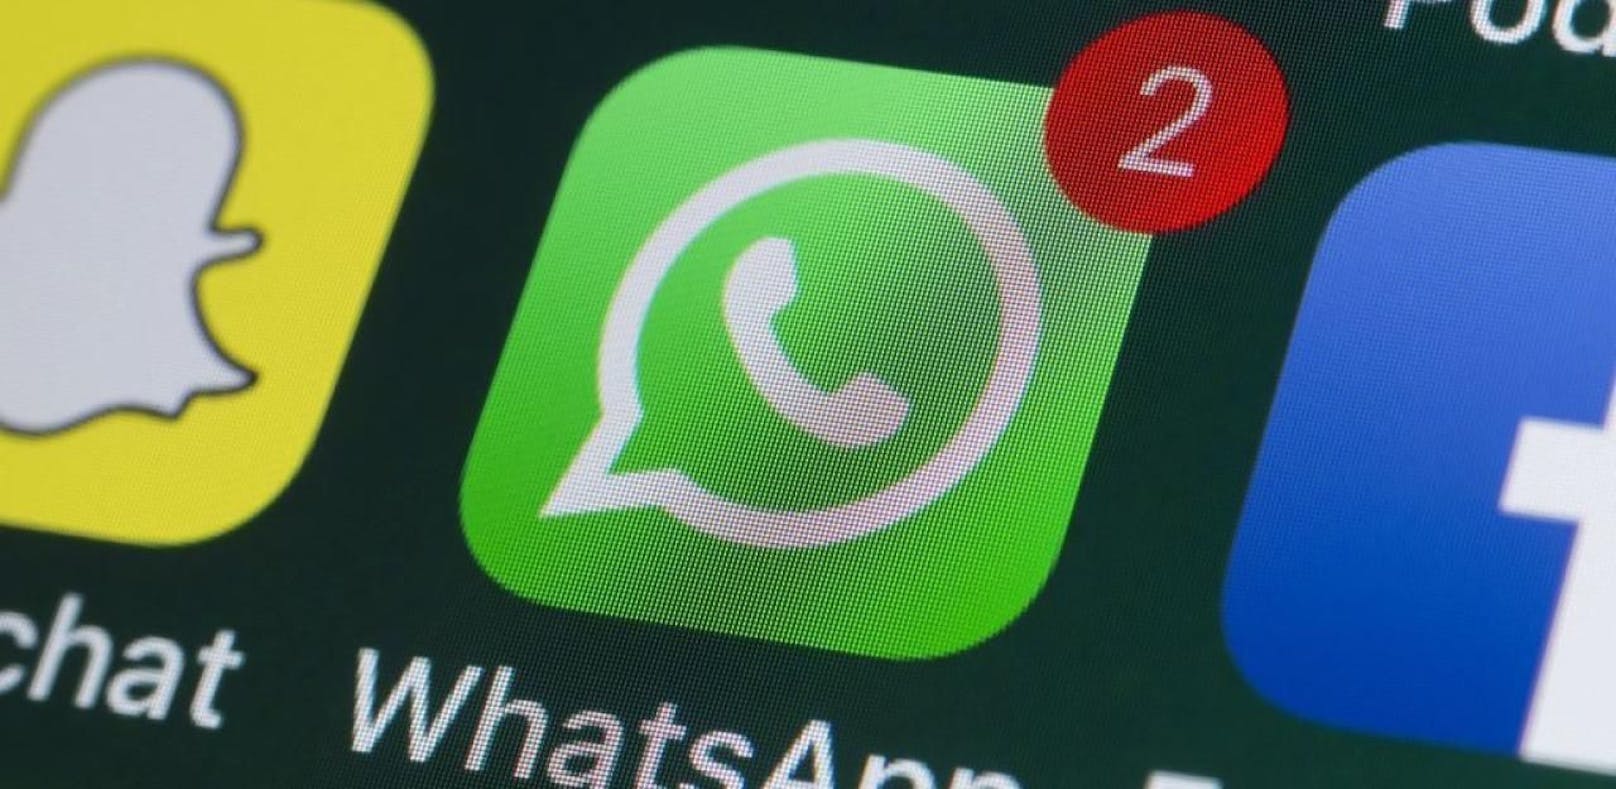 Bei Whatsapp werden eine Menge Konten für missbräuchliche Zwecke wie den Versand von Spam verwendet.
